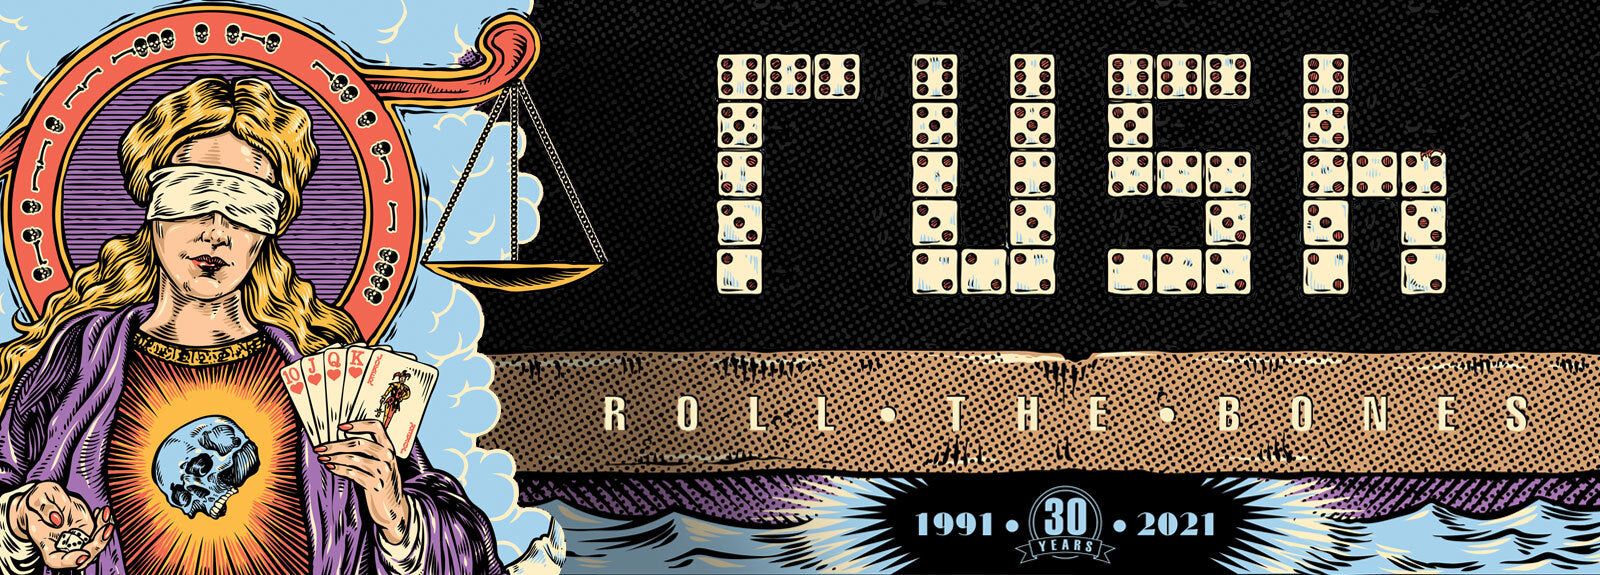 Rush Roll The Bones 30th Anniversary